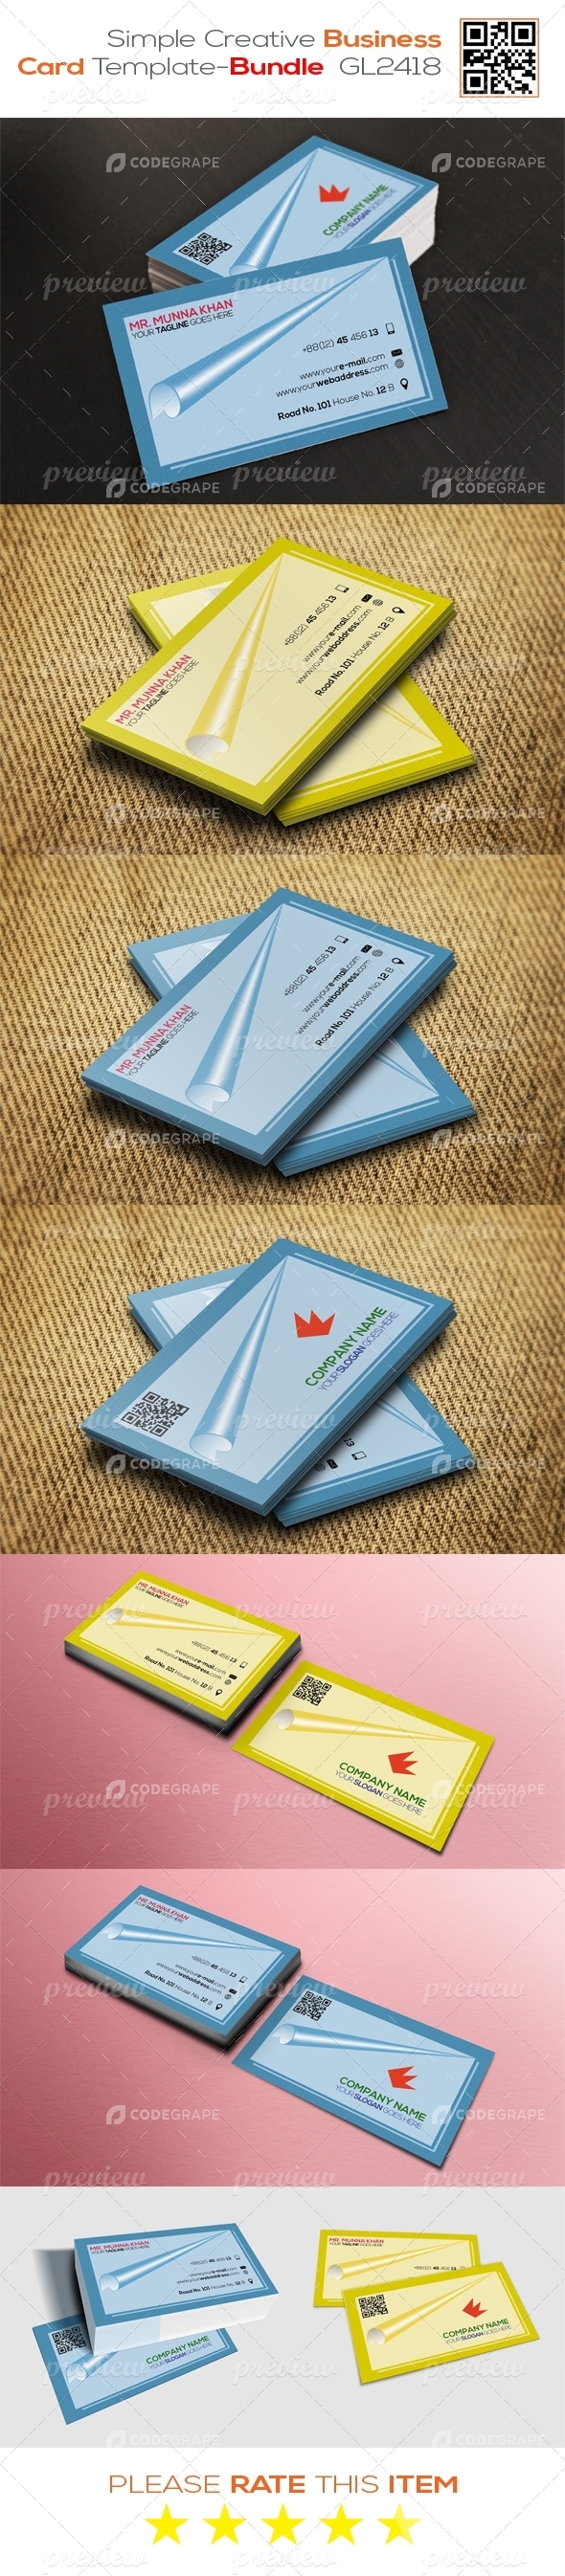 Simple Creative Business Card Template - Bundle GL2418